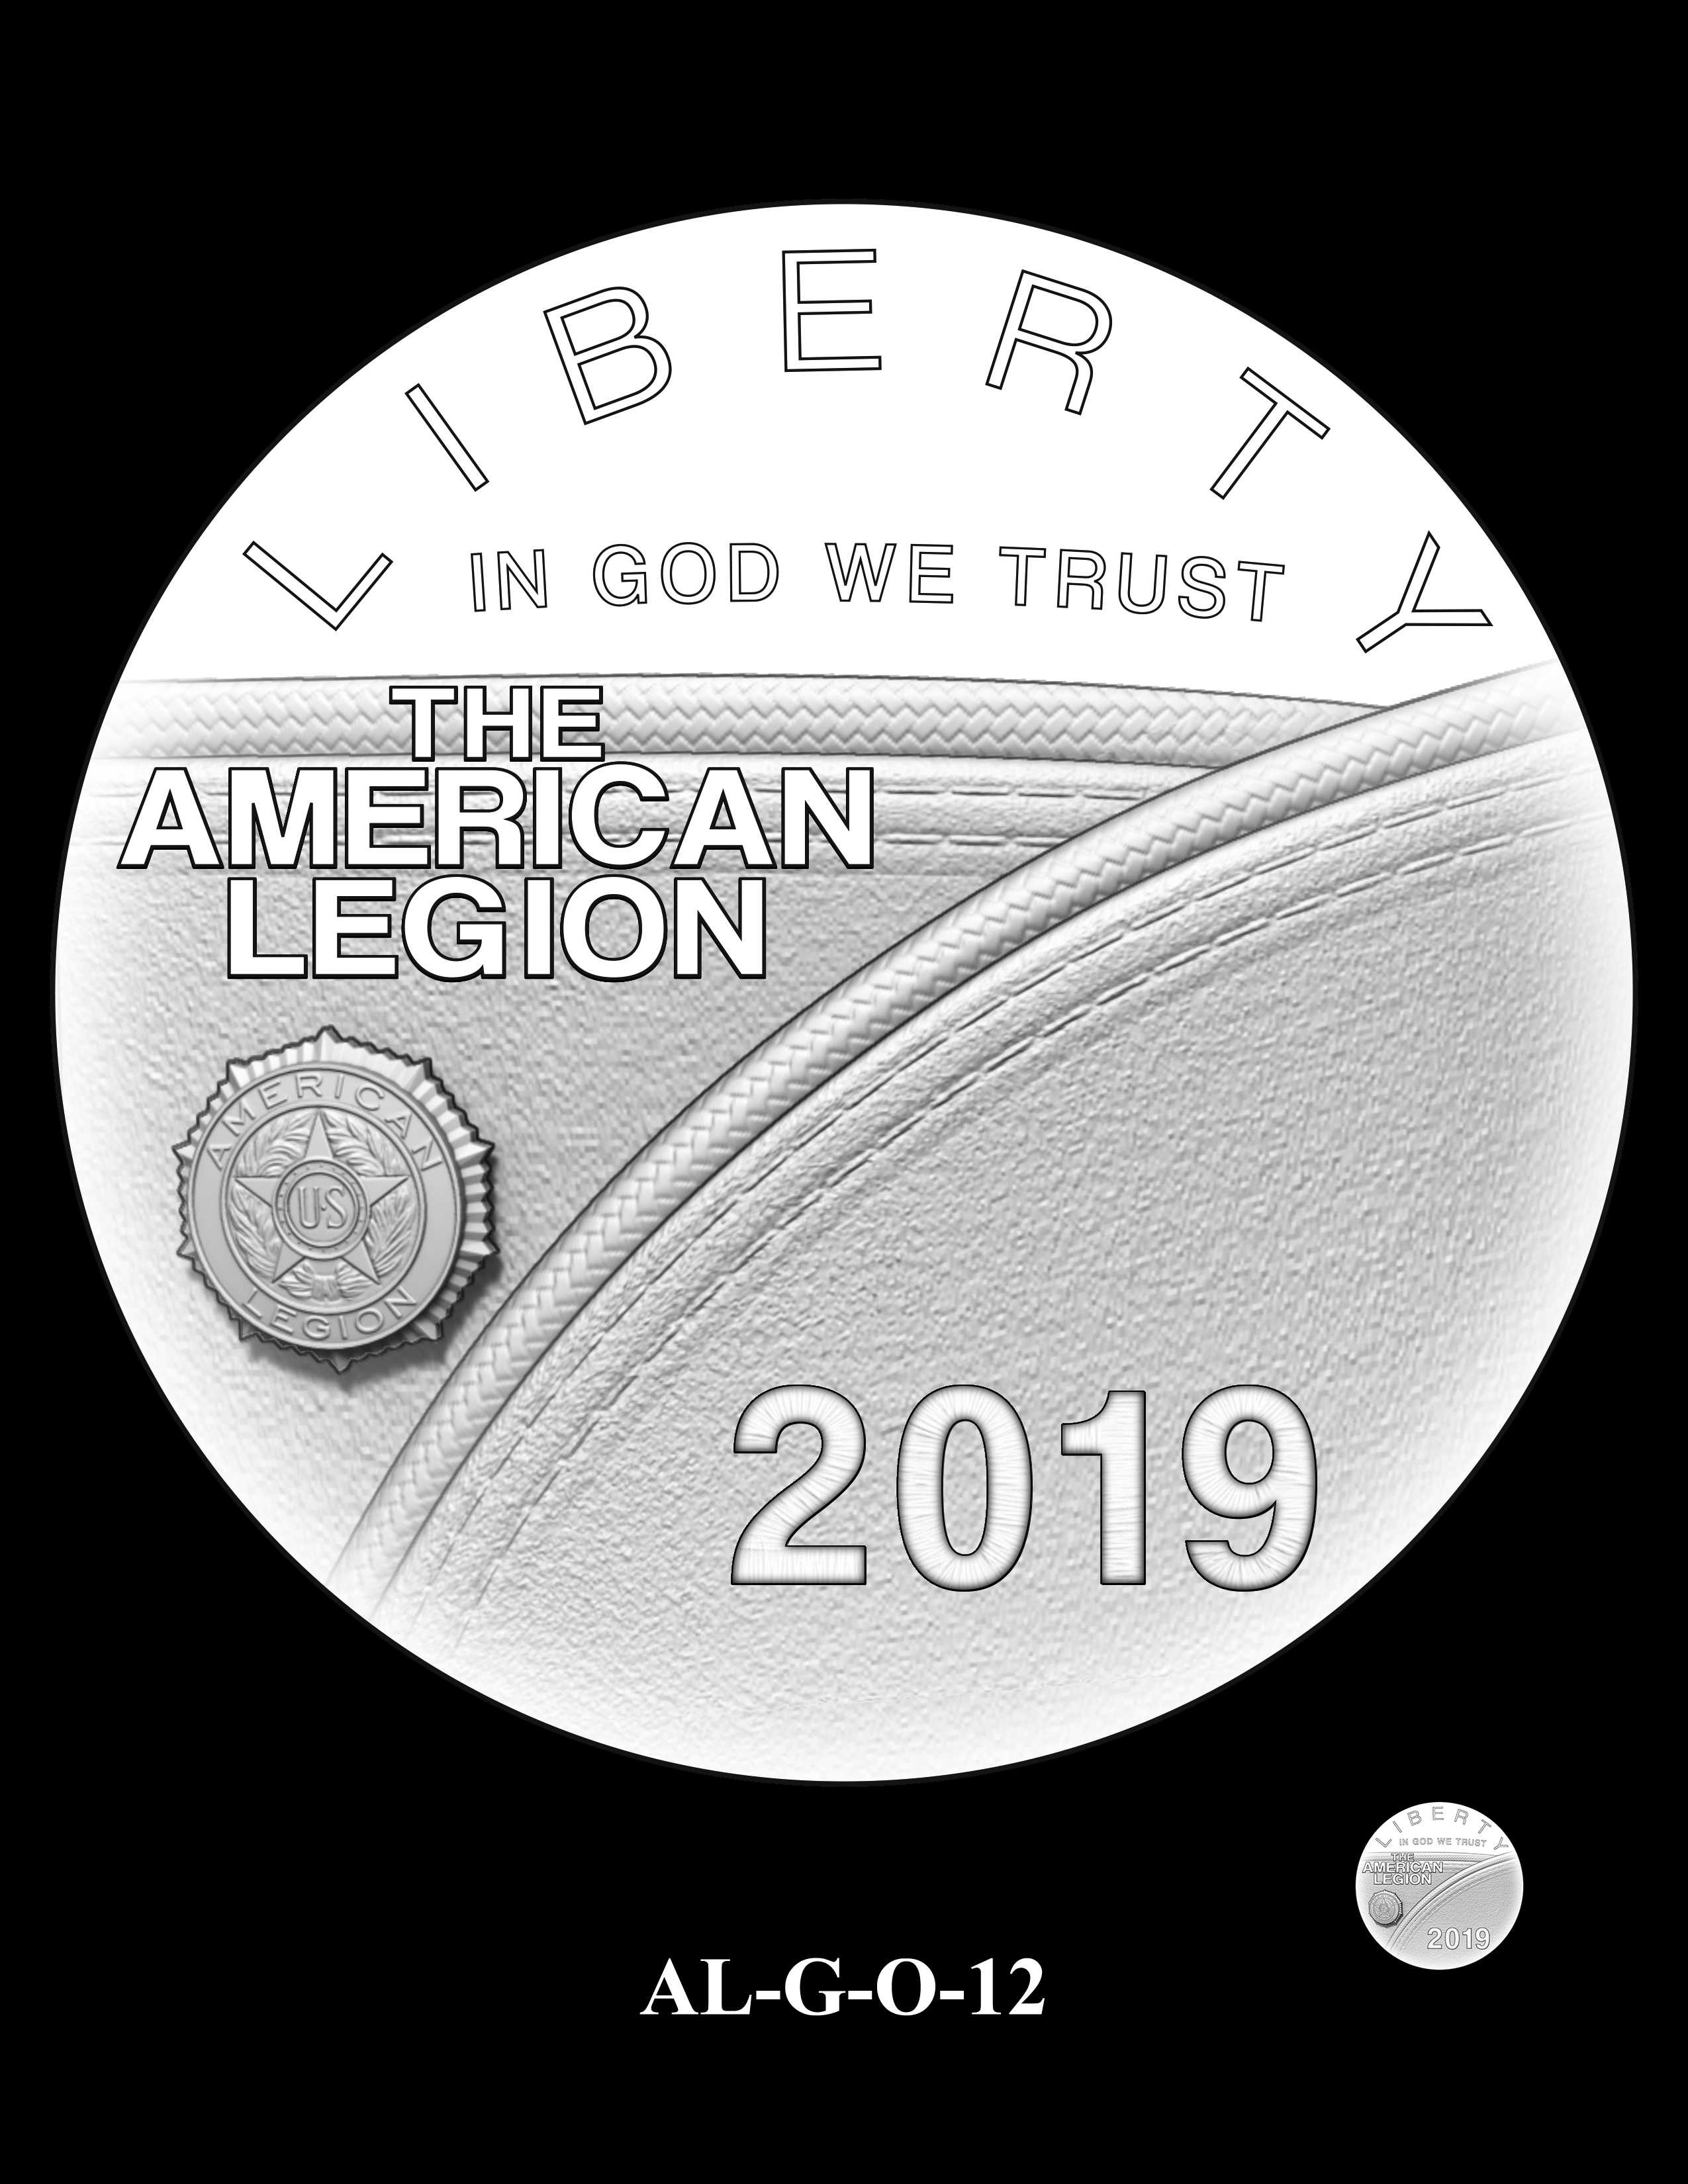 AL-G-O-12 -- 2019 American Legion 100th Anniversary Commemorative Coin Program - Gold Obverse